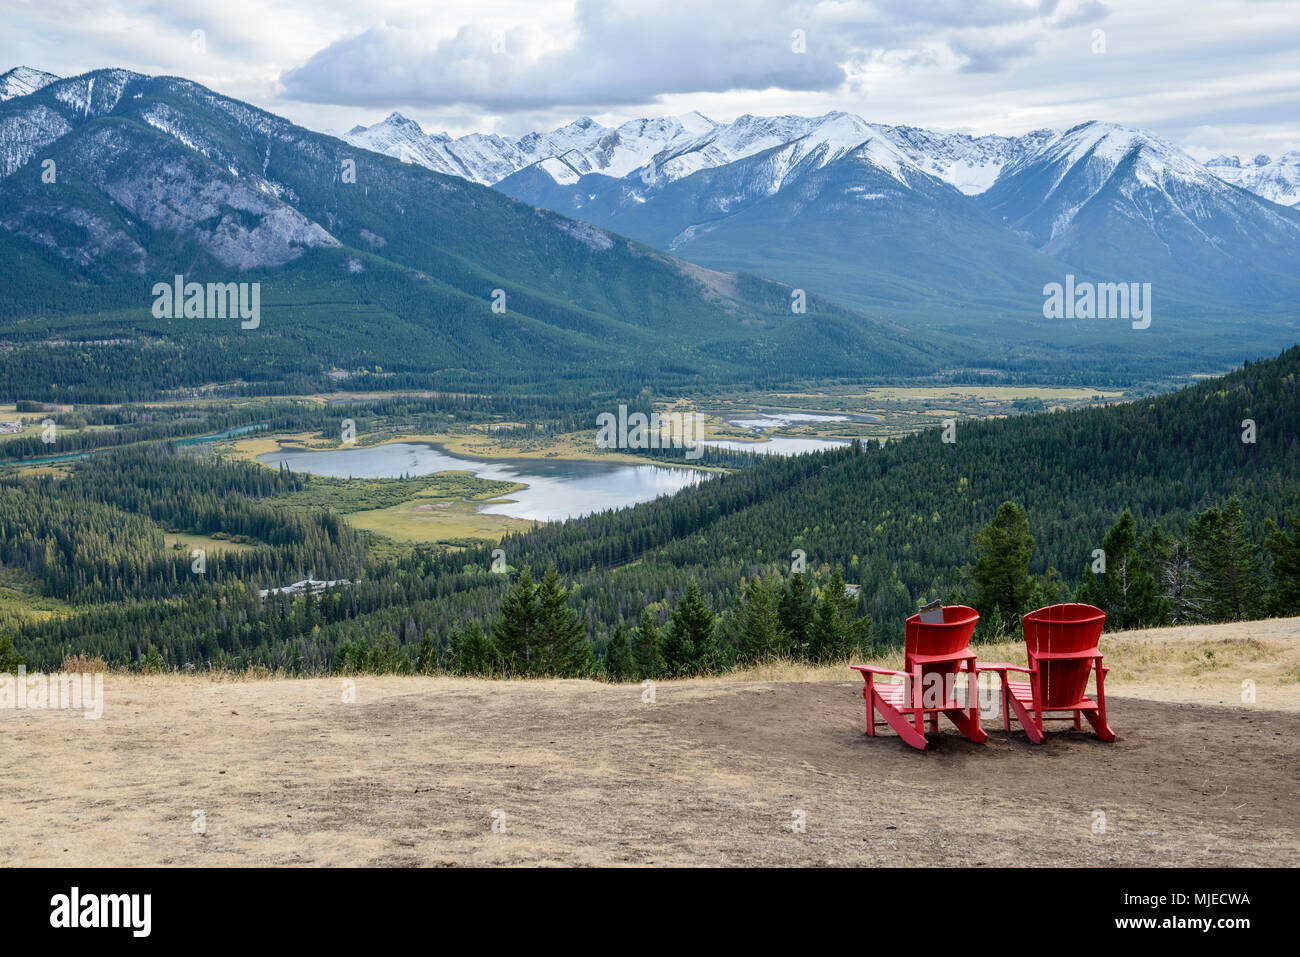 Zwei rote Stühle auf einem flachen Hang sind einladend zu sitzen und die  schöne Aussicht auf das grüne Tal in der Nähe der Stadt Banff, Kanada  Stockfotografie - Alamy